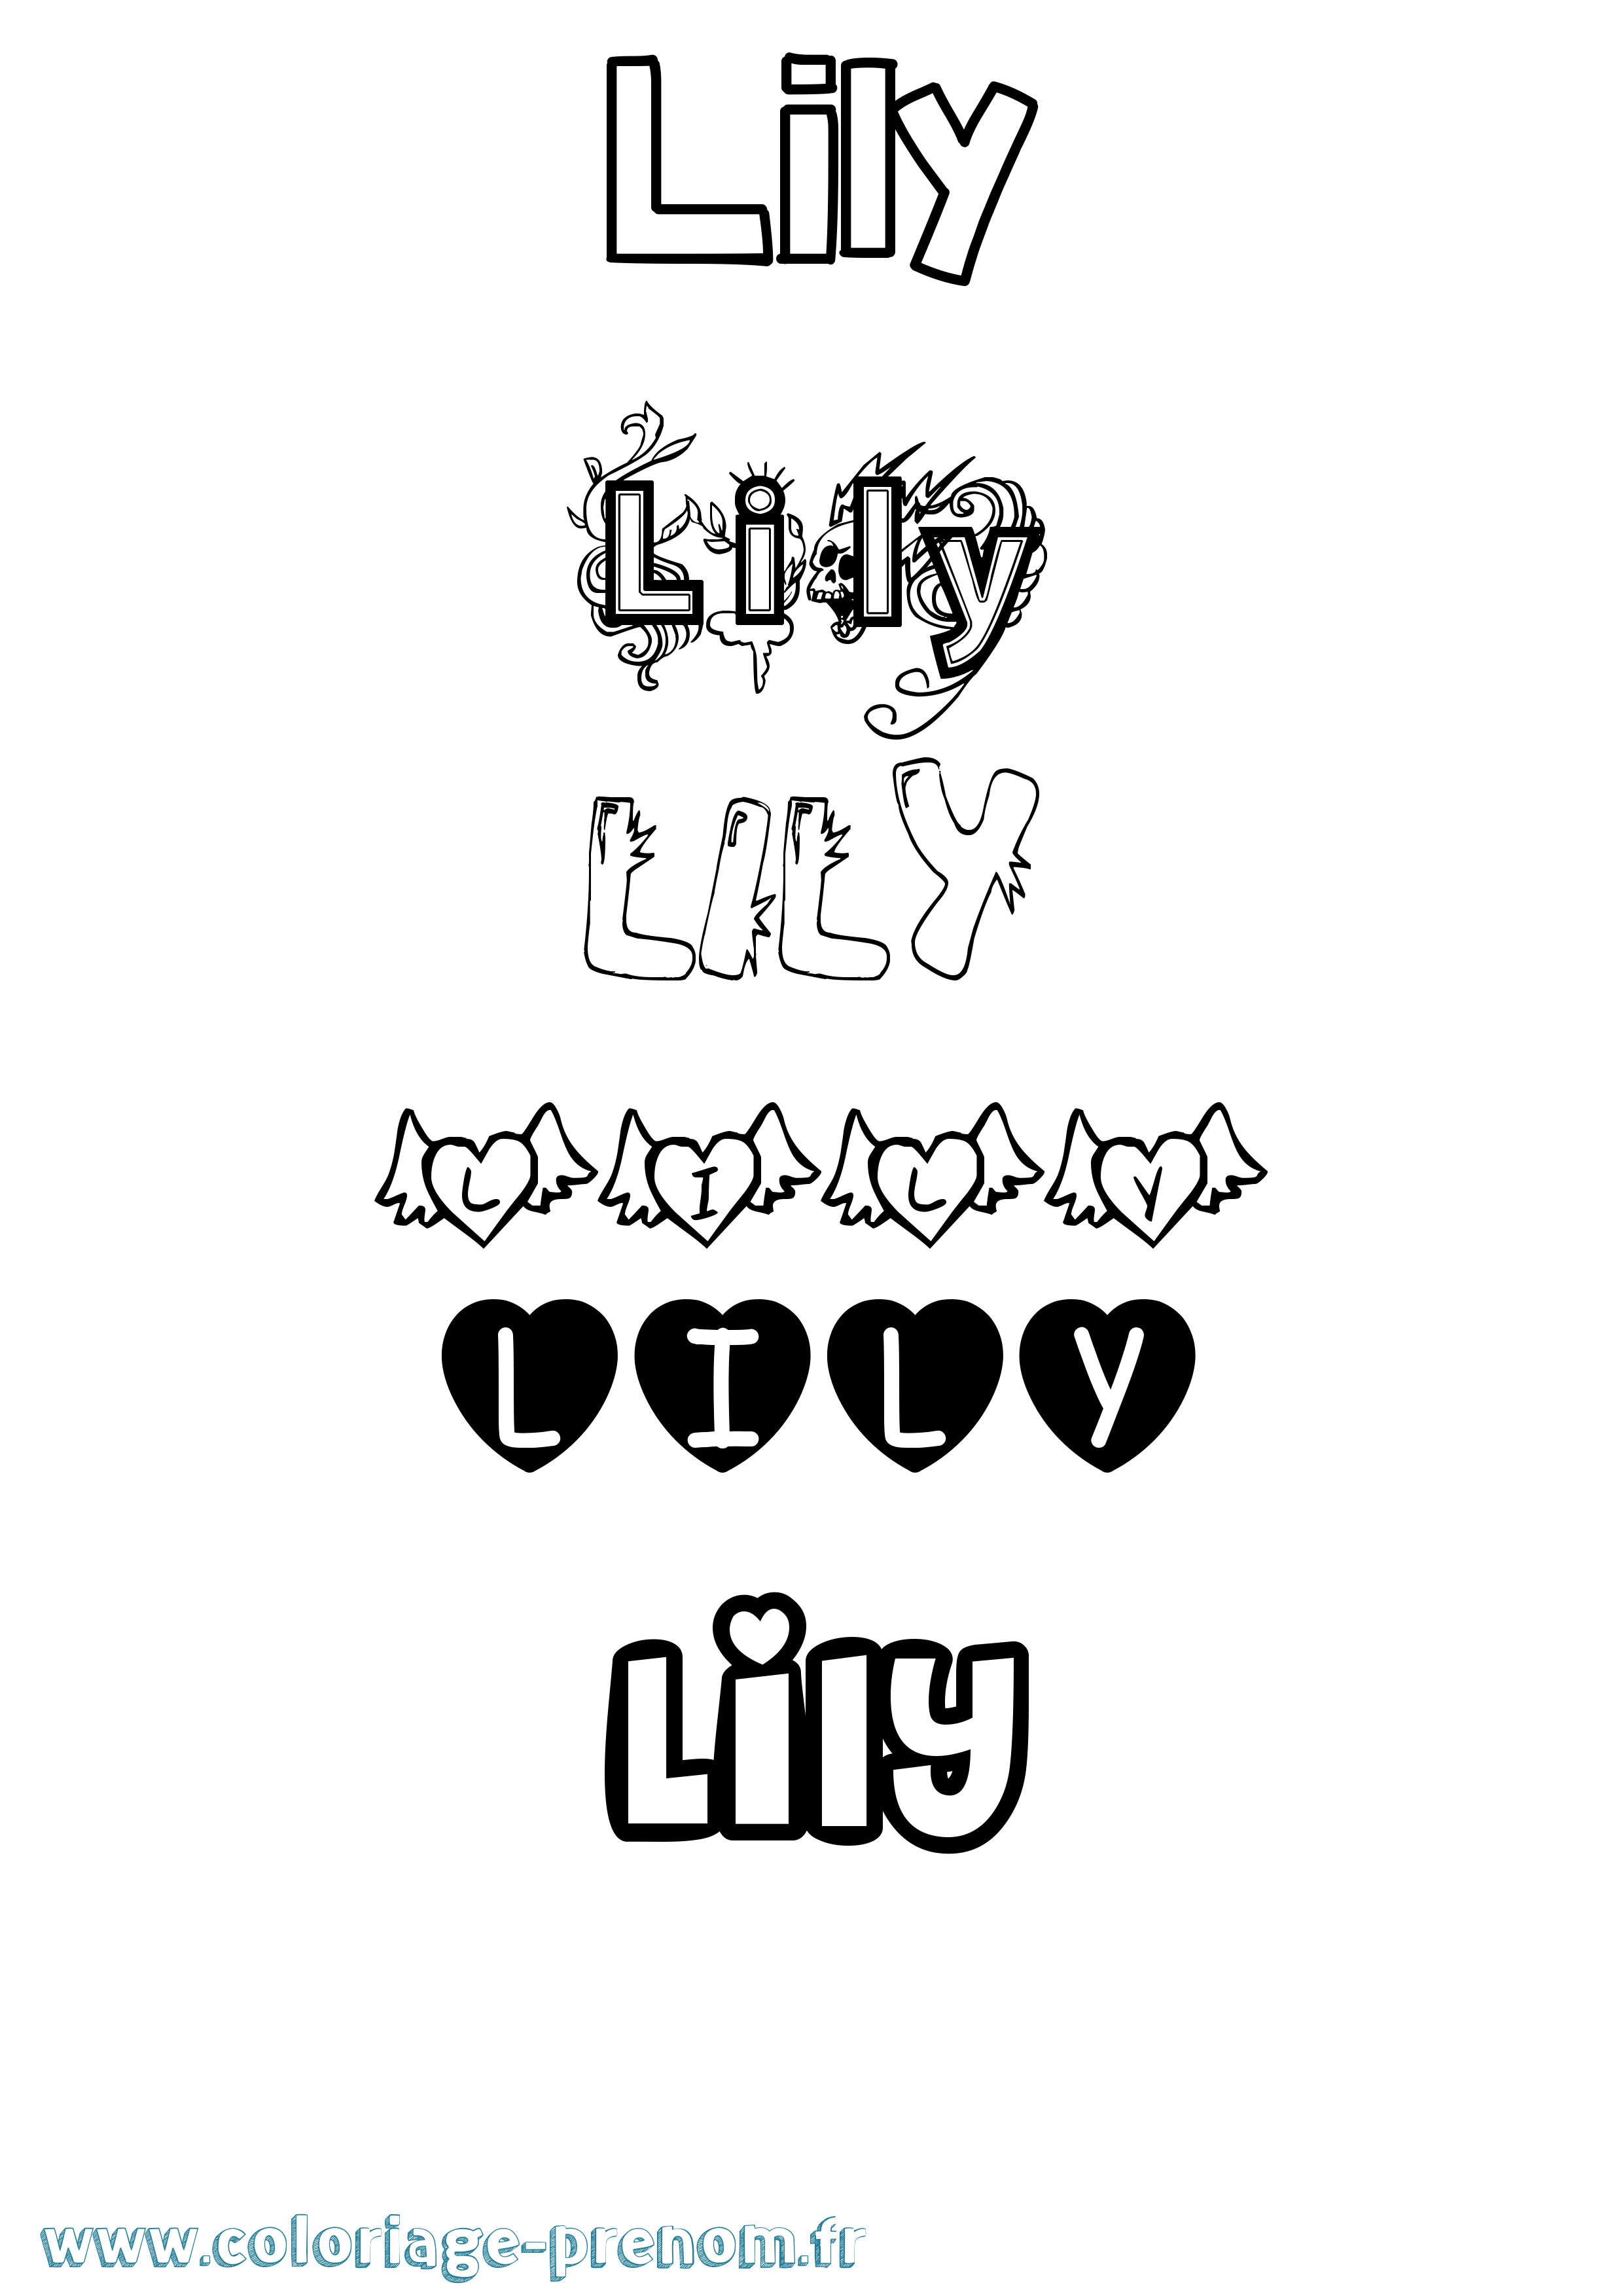 Coloriage prénom Lily Girly